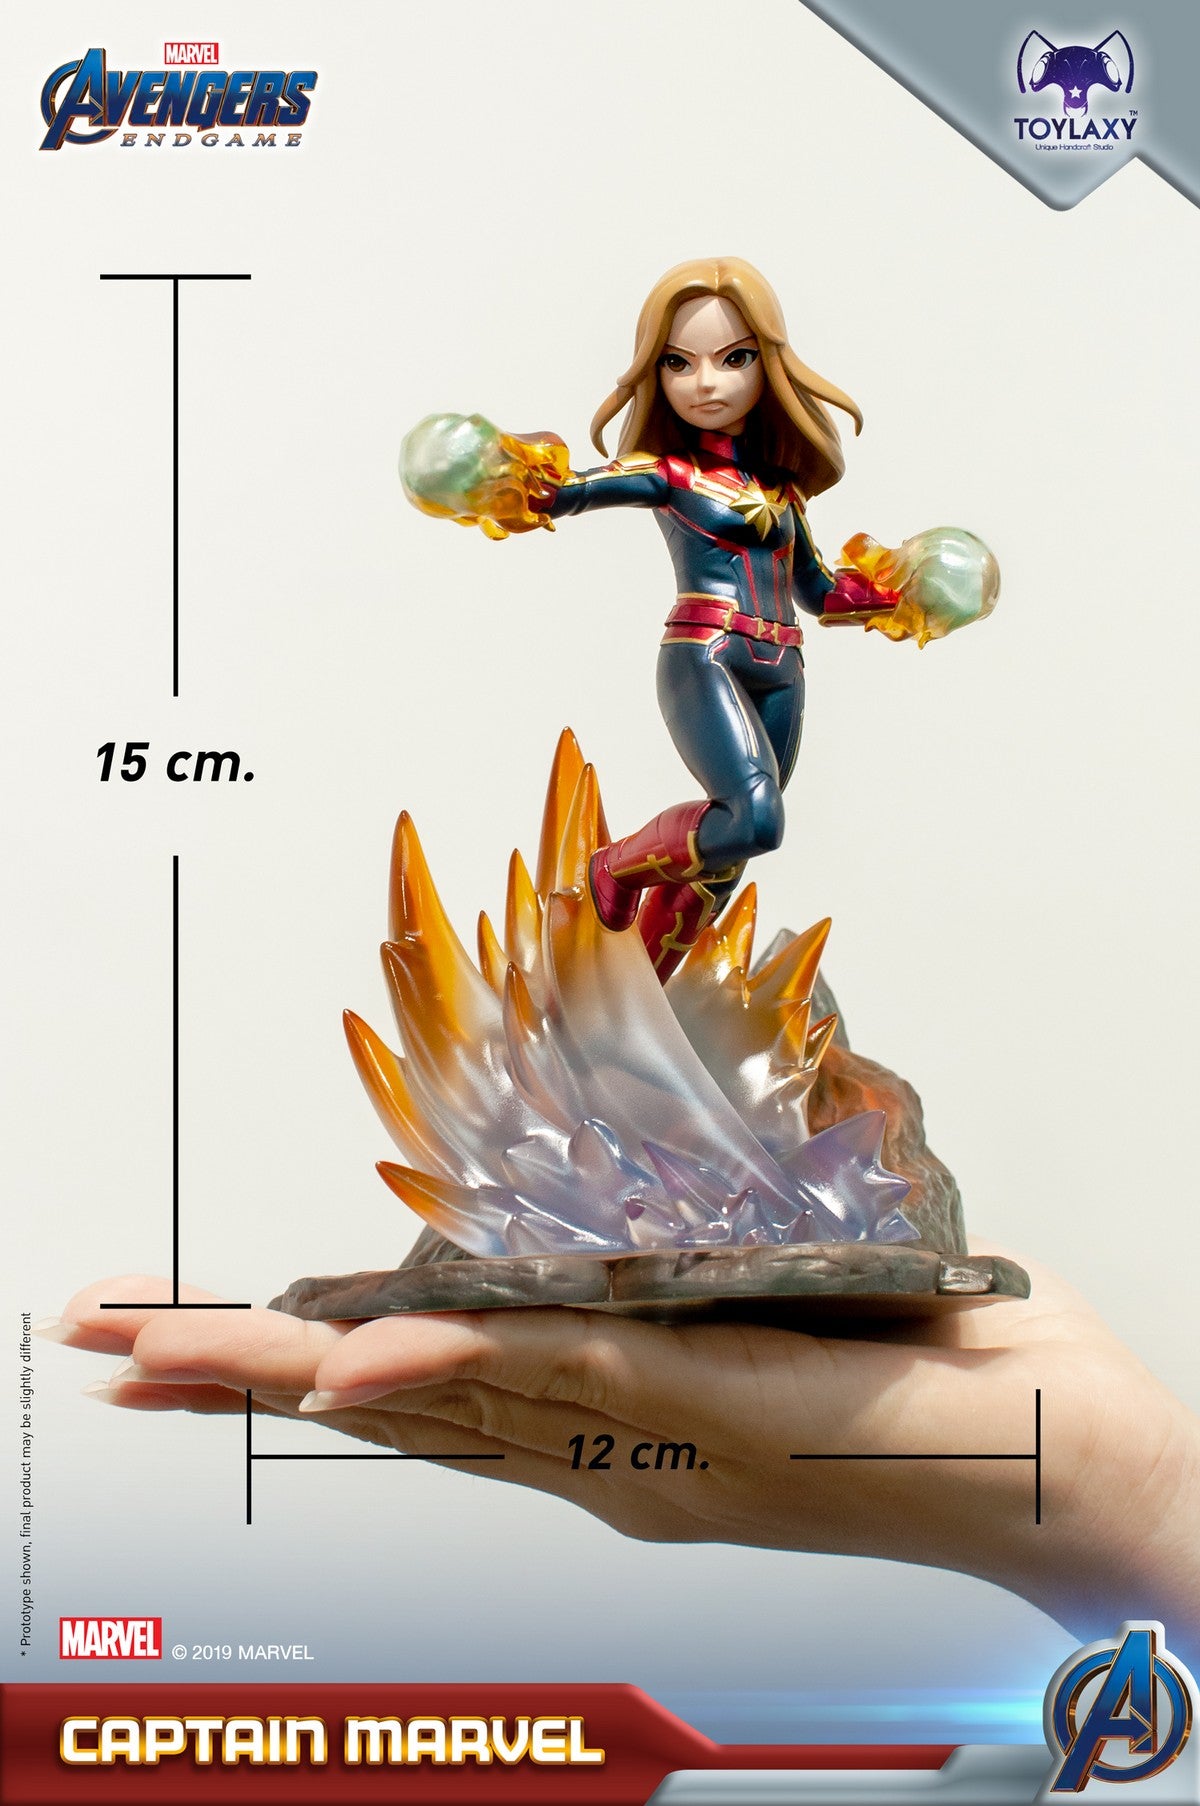 漫威復仇者聯盟：Marvel隊長正版模型手辦人偶玩具 Marvel's Avengers: Endgame Premium PVC Captain Marvel official figure toy wave 2  size